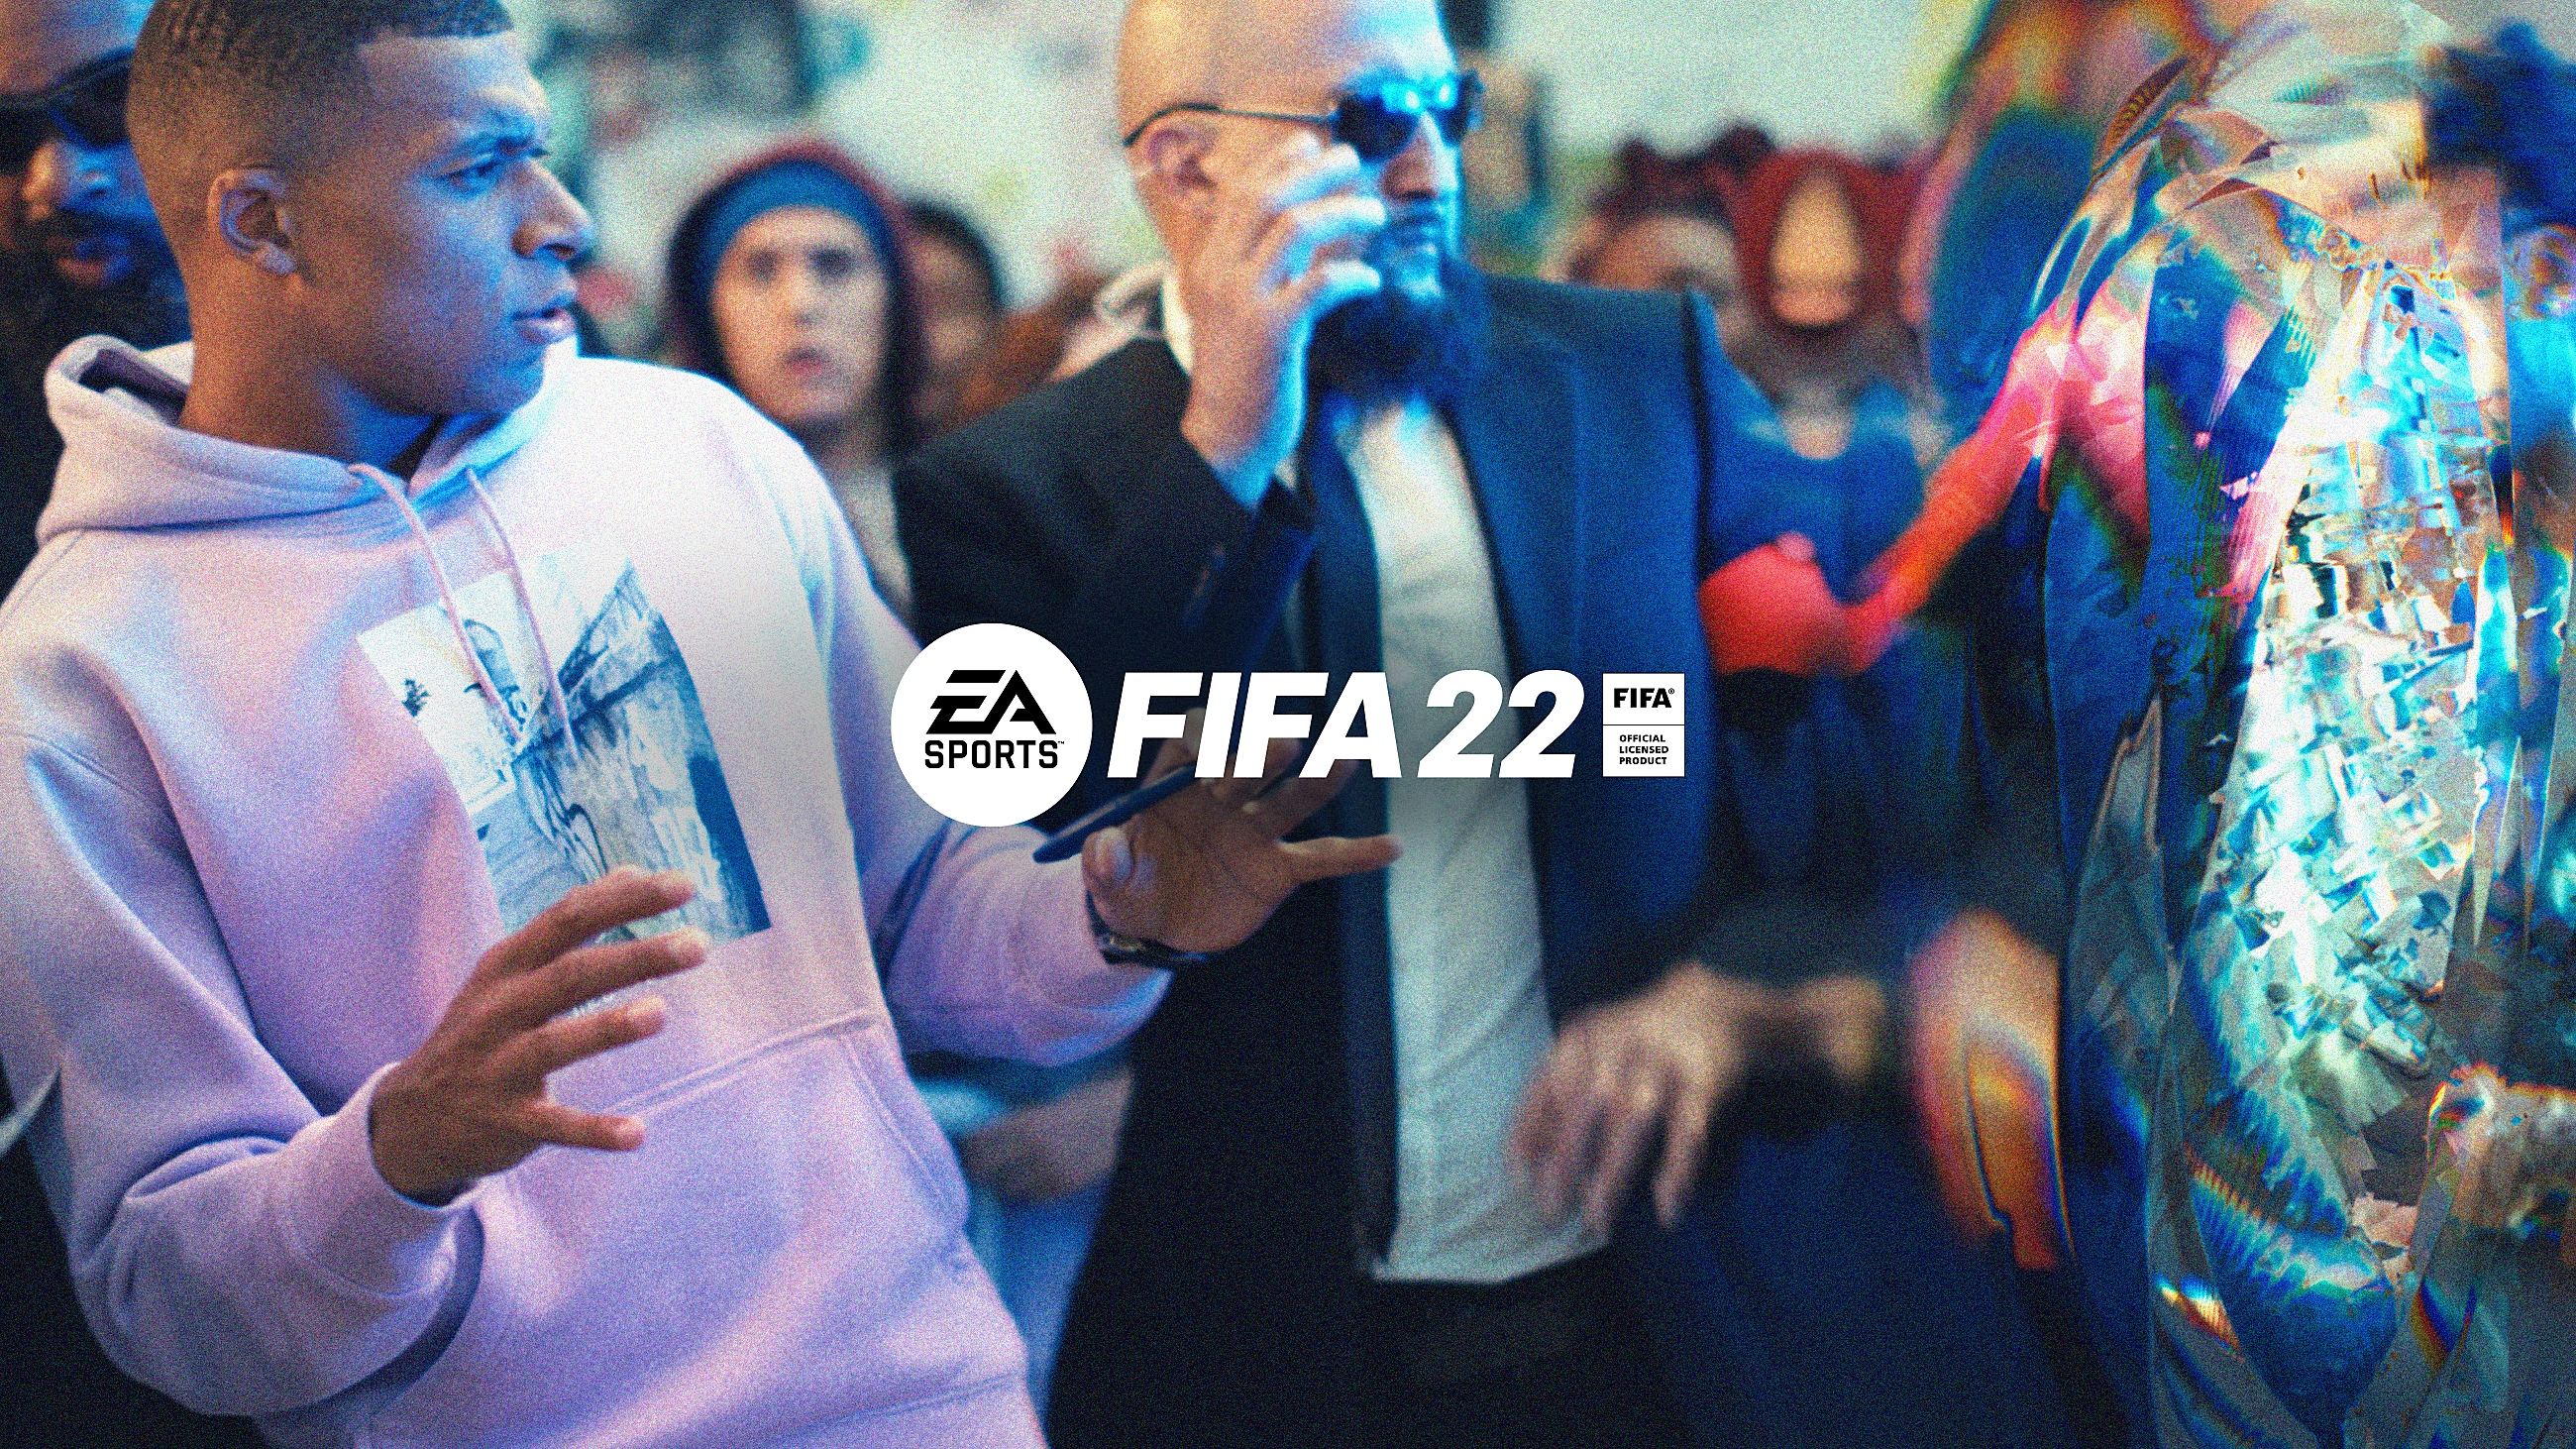 『FIFA 22』| 公式ゲームプレイトレーラー